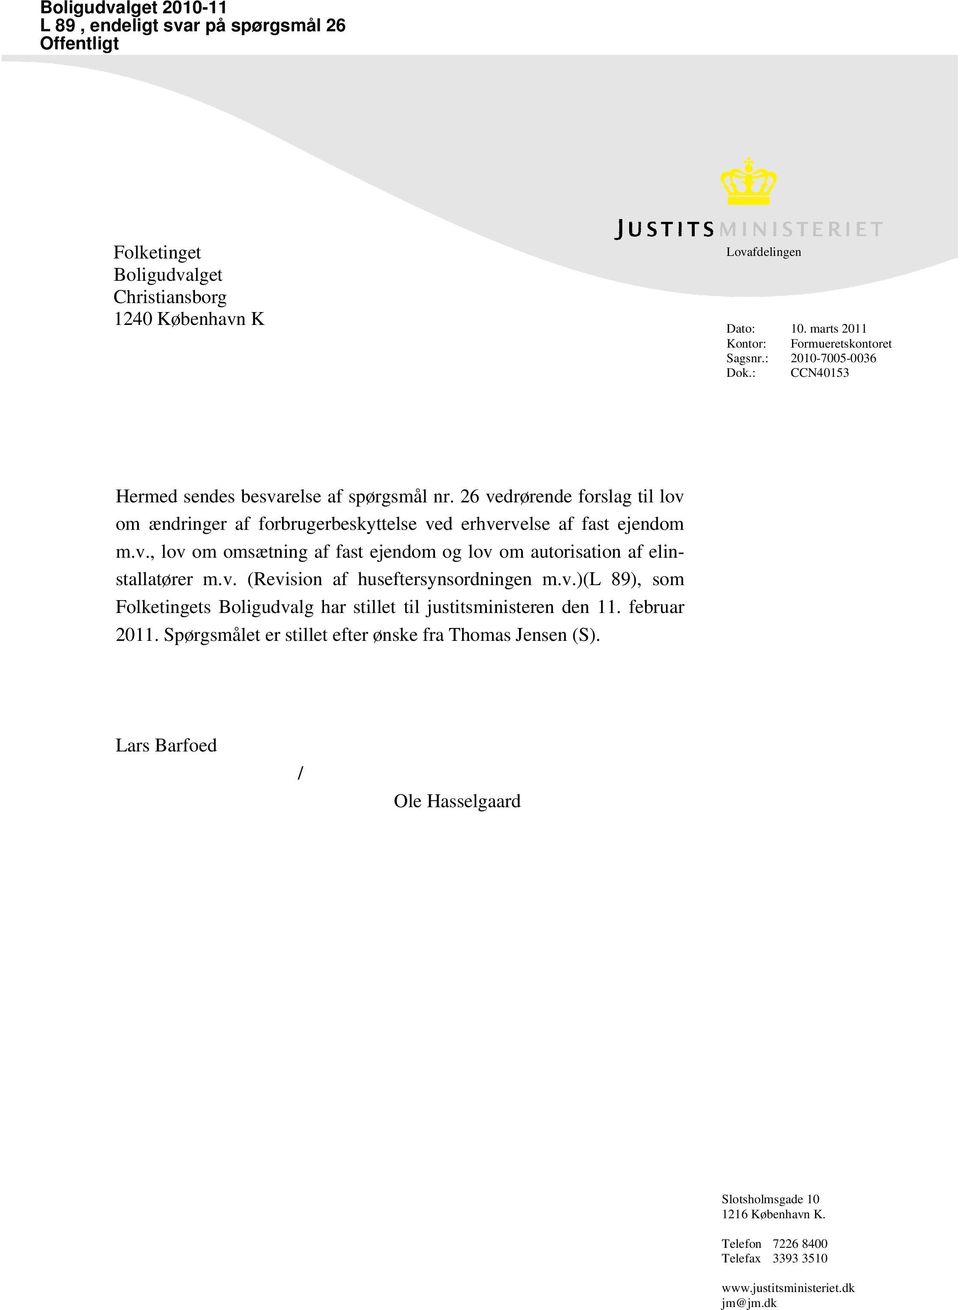 v. (Revision af huseftersynsordningen m.v.)(l 89), som Folketingets Boligudvalg har stillet til justitsministeren den 11. februar 2011. Spørgsmålet er stillet efter ønske fra Thomas Jensen (S).